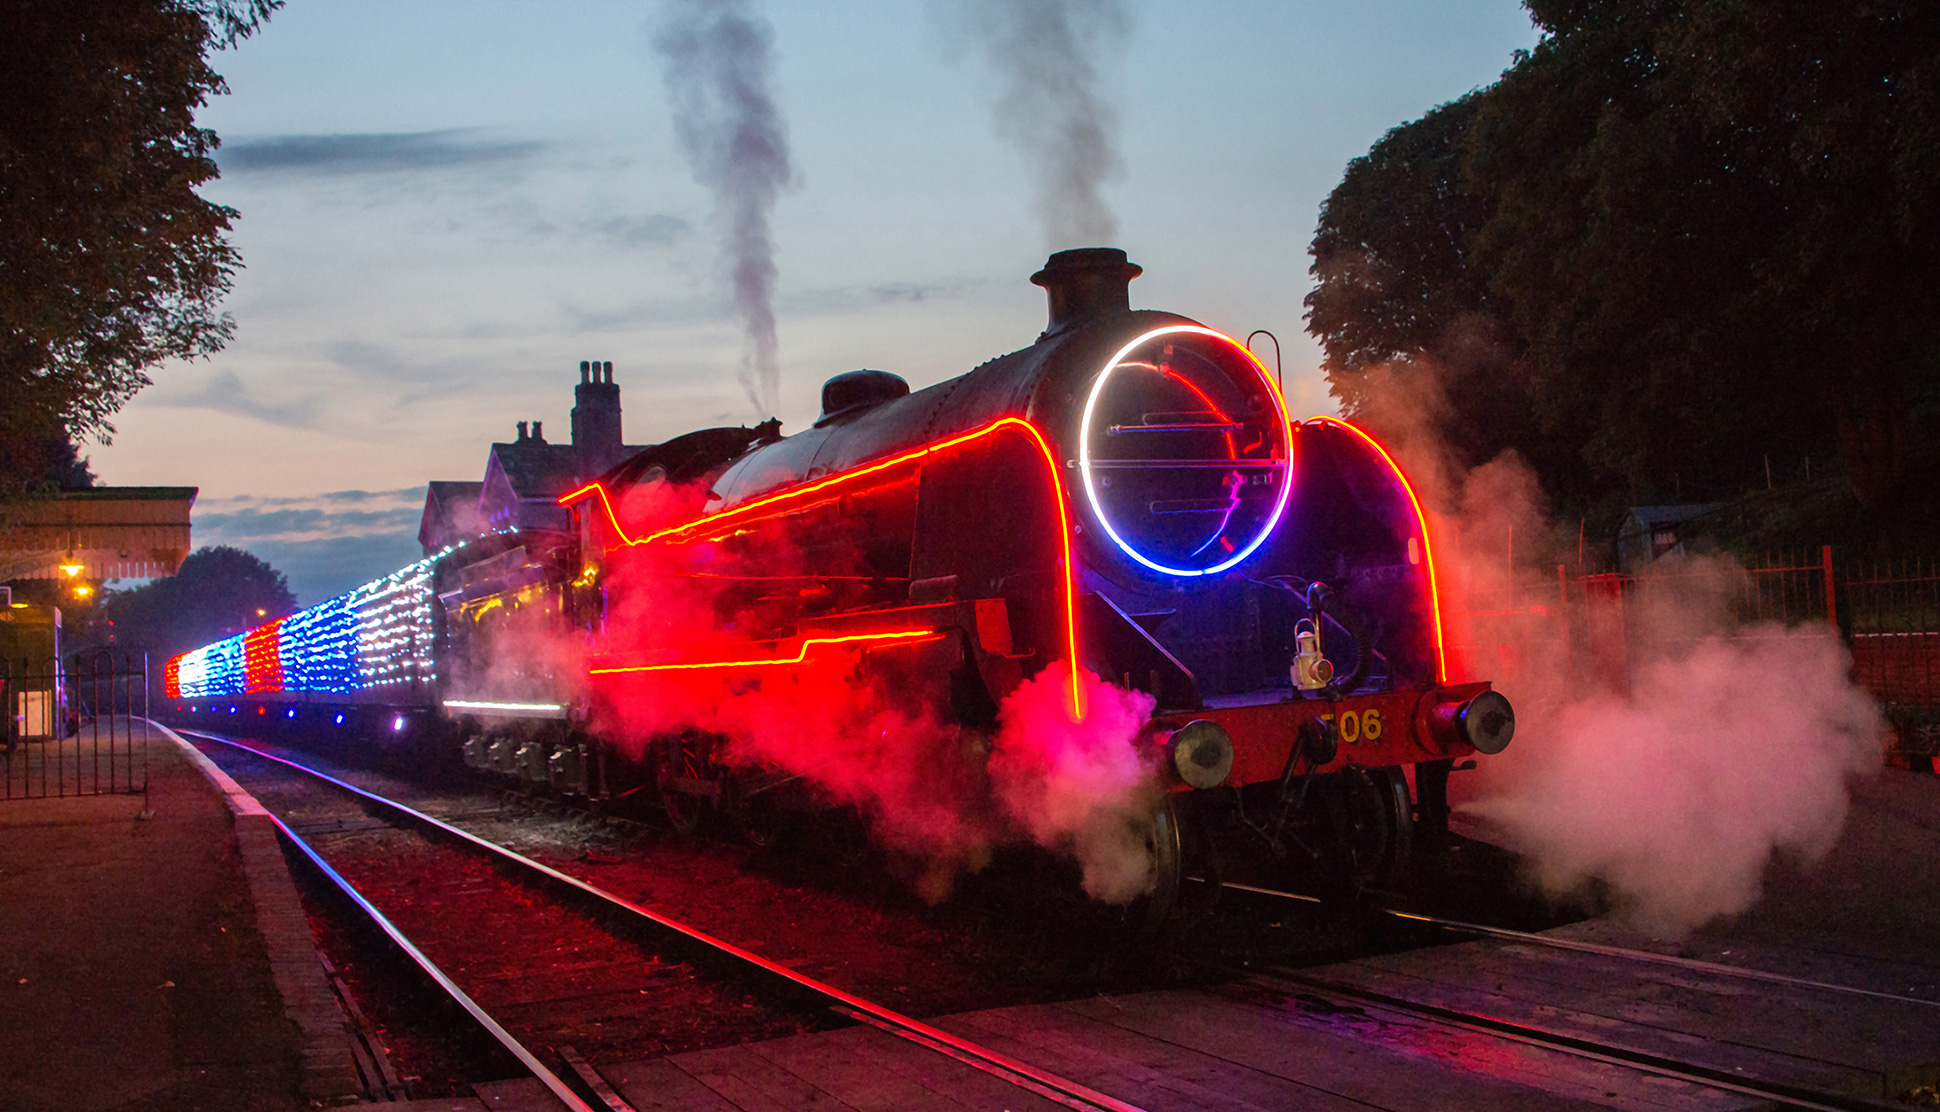 Steam train illuminated